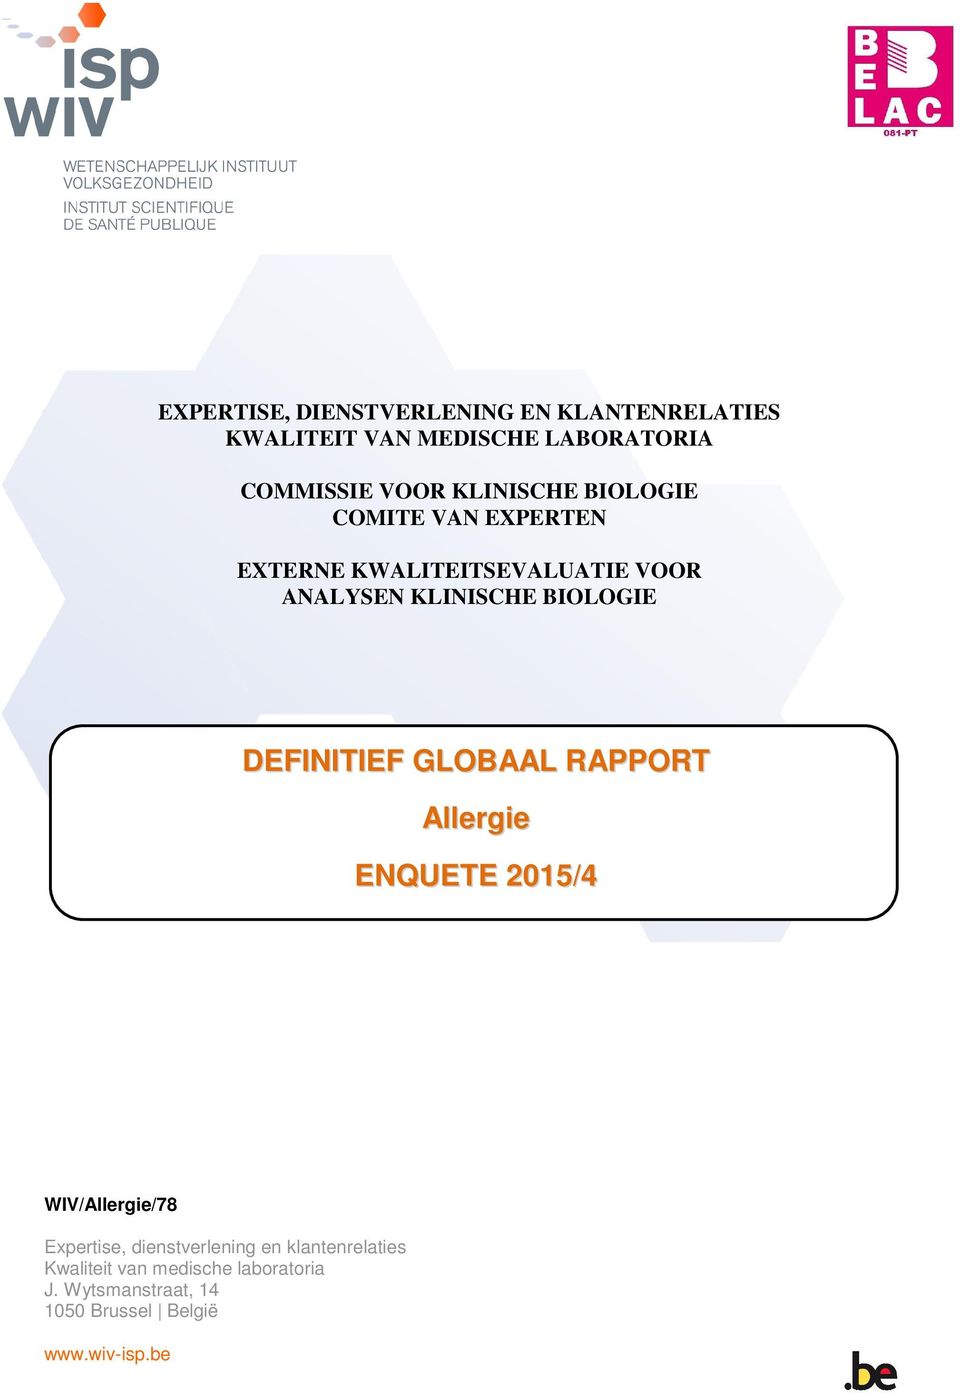 DEFINITIEF GLOBAAL RAPPORT Allergie ENQUETE 2015/4 WIV/Allergie/78 Expertise, dienstverlening en